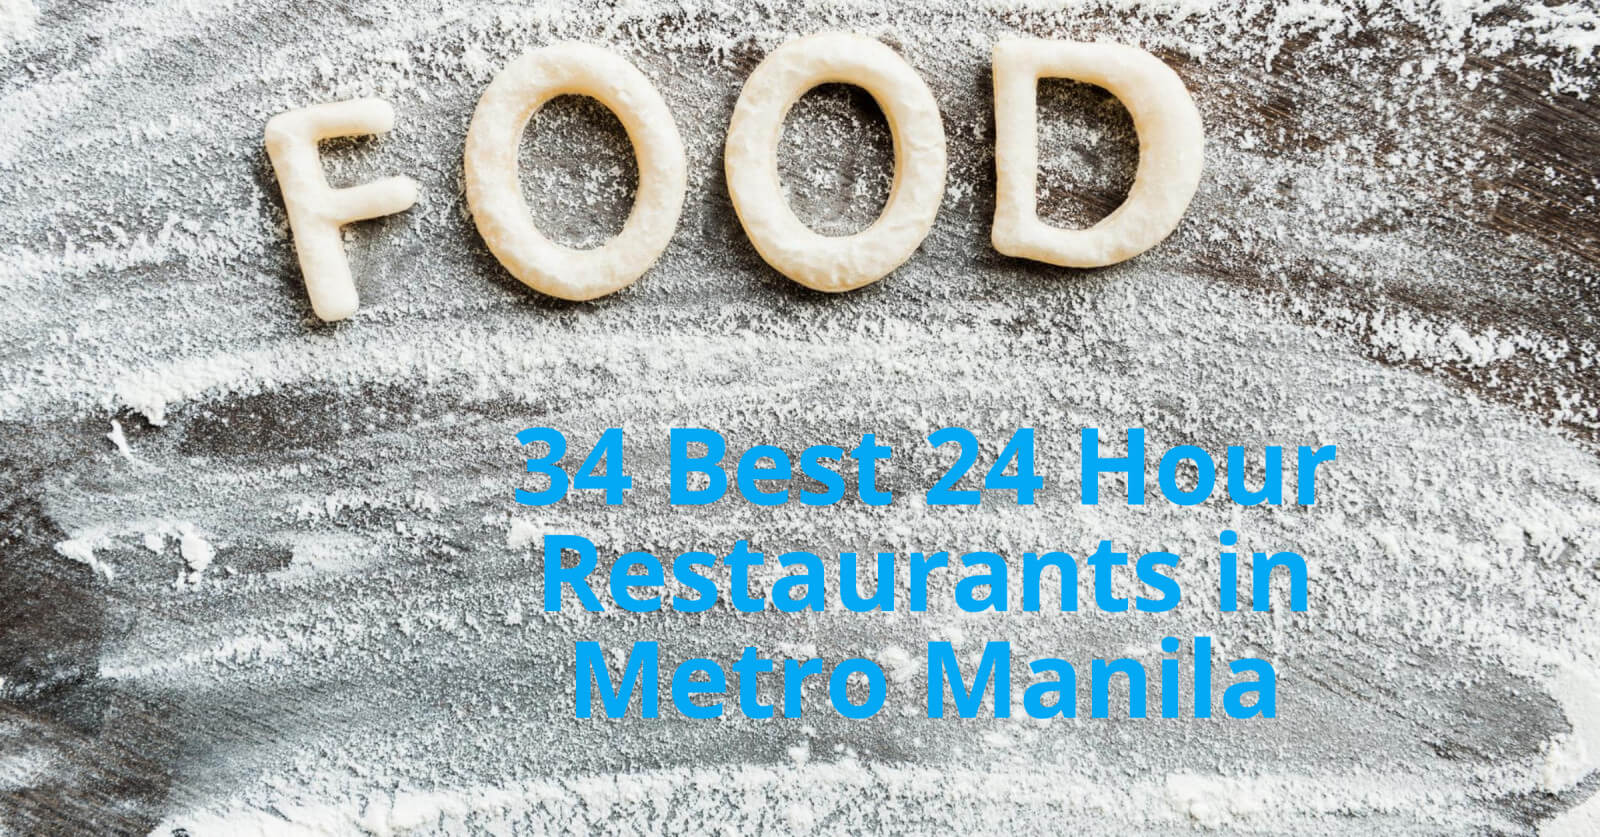 24 hour restaurants